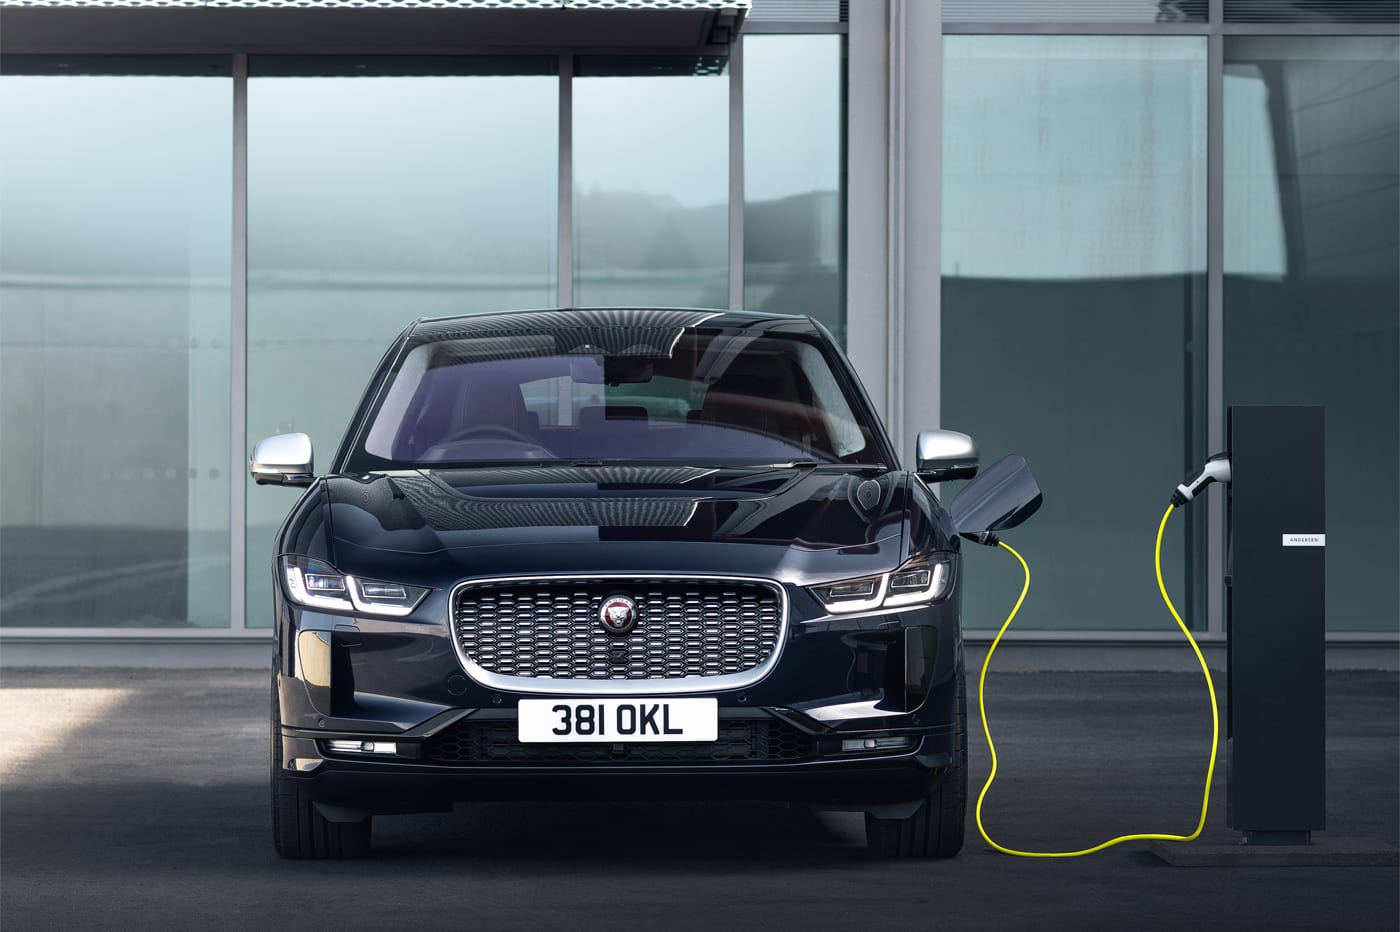 Jaguar Met À Jour Son Suv Électrique I-Pace, Avec Diverses Améliorations